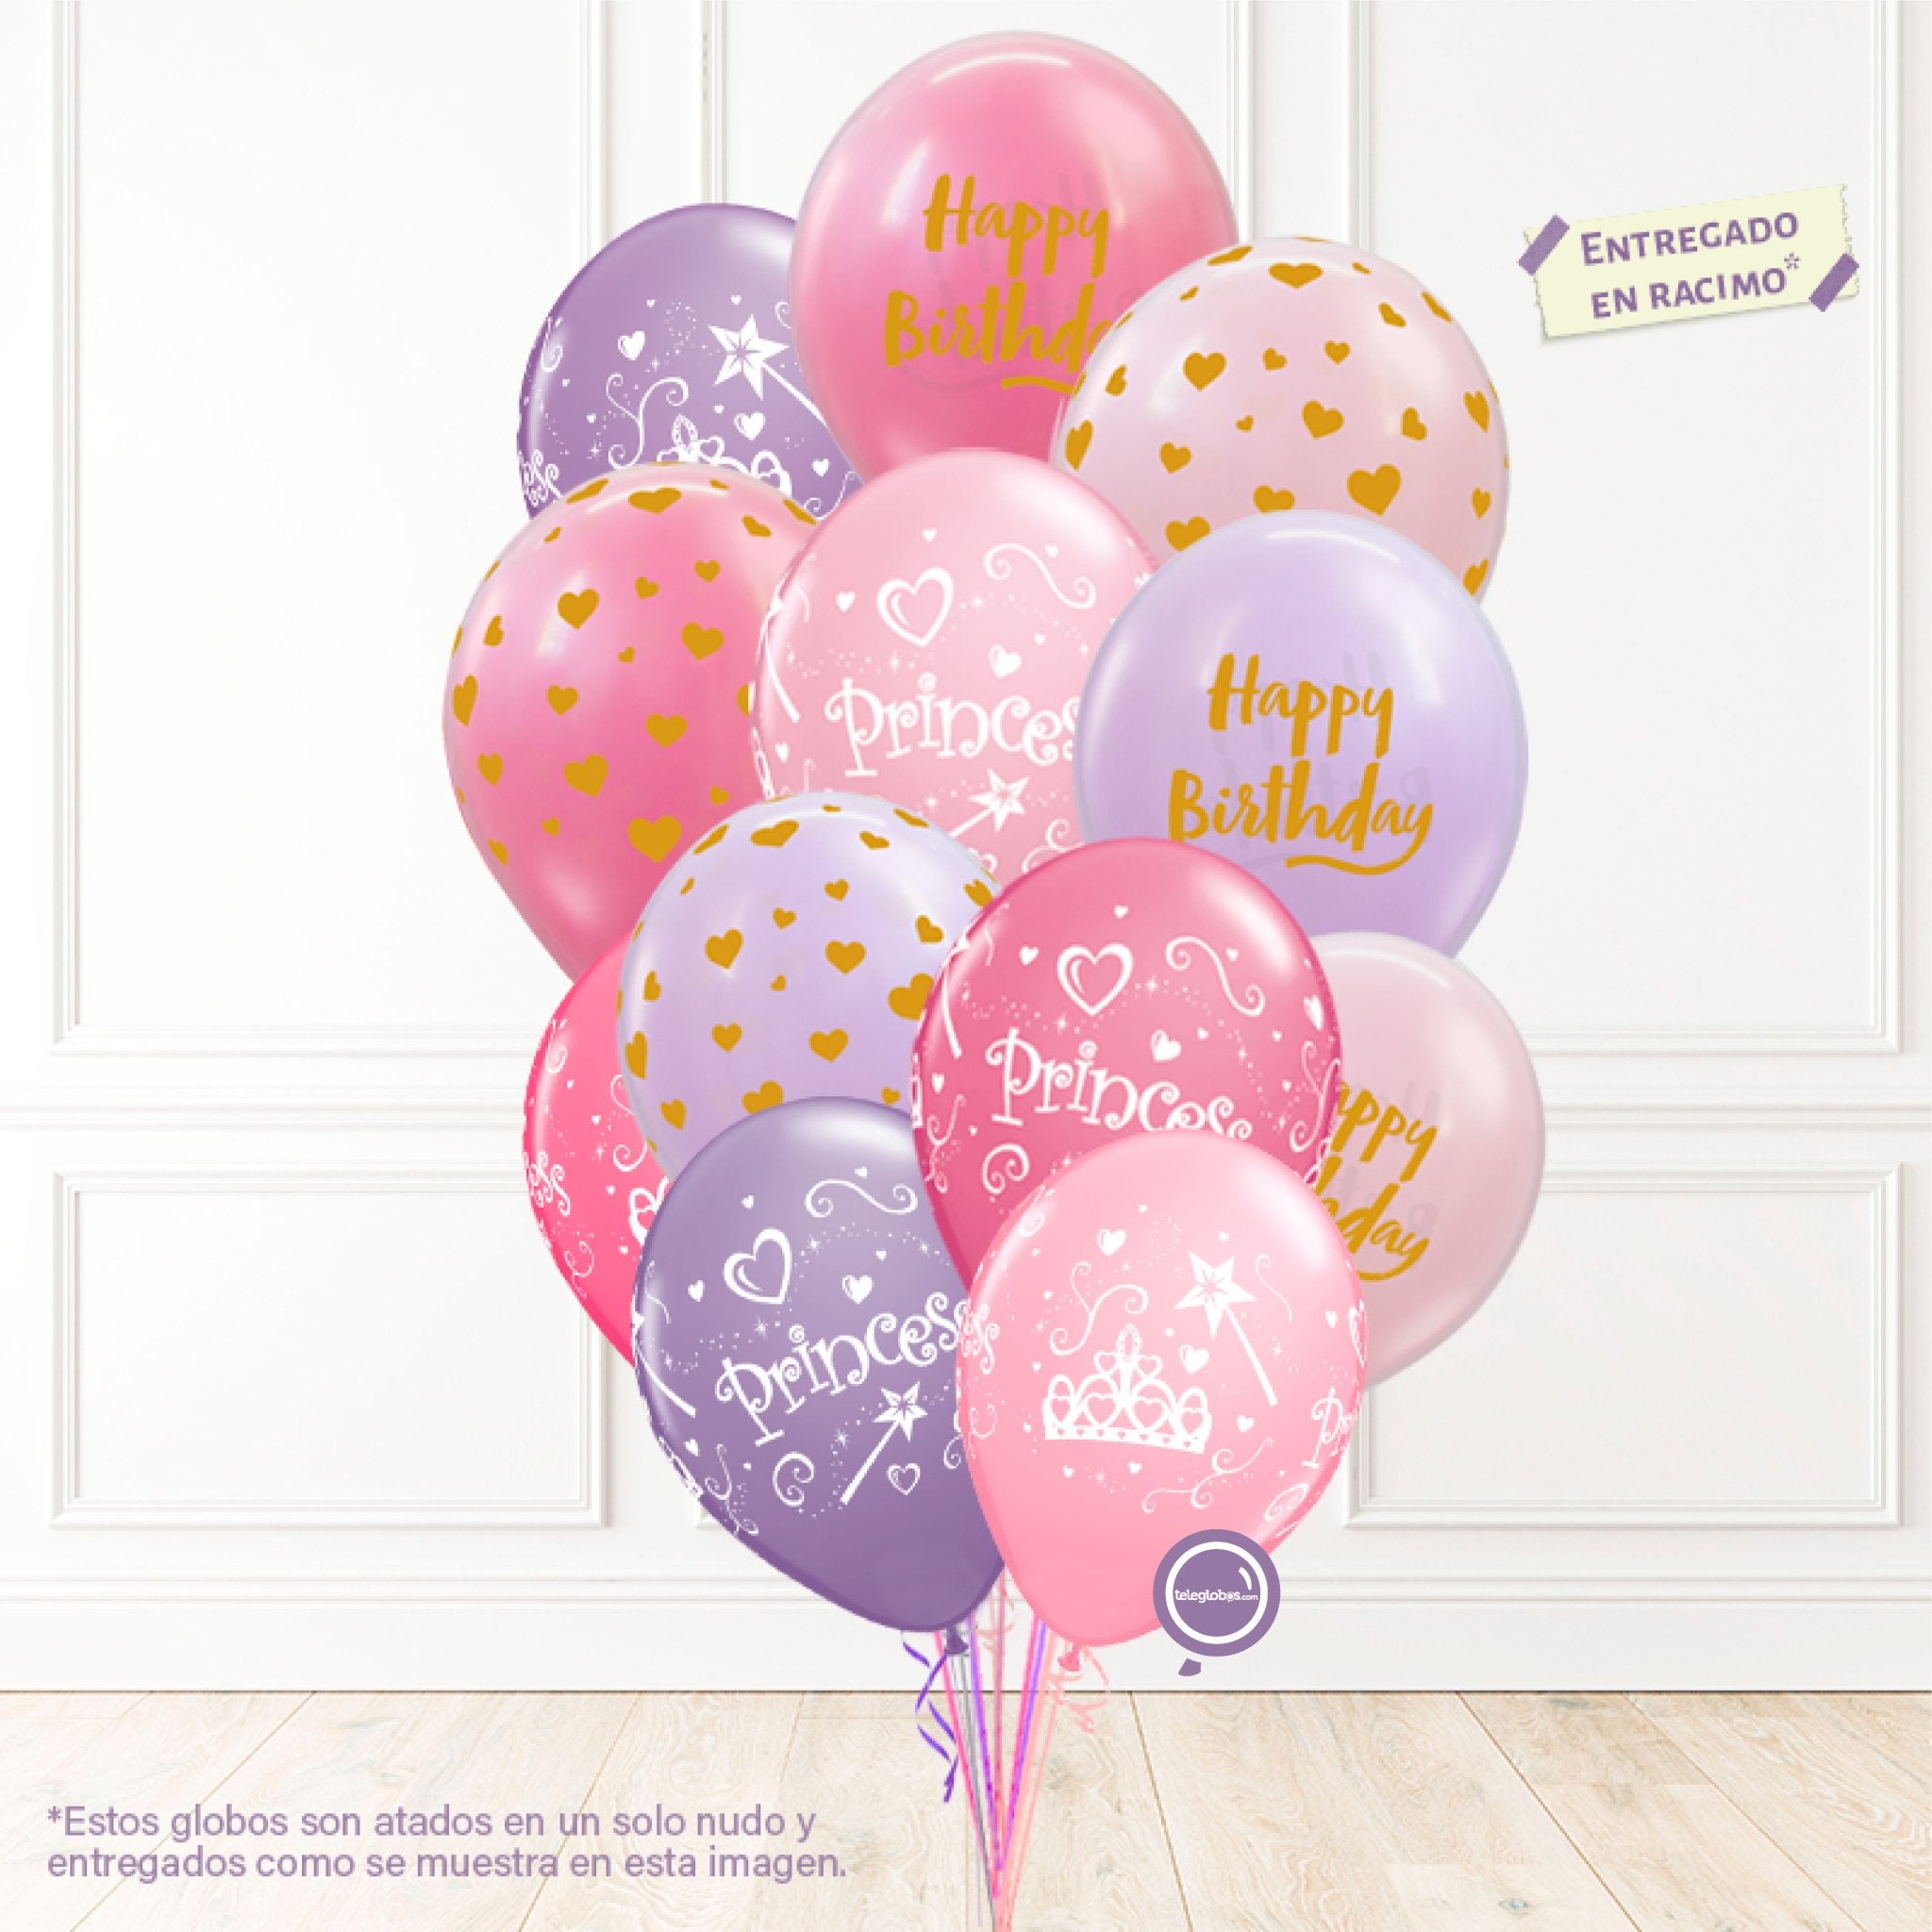 12 globos inflados con helio -Princess/Happy Birthday- Bio* -RAC008- | Globos y Regalos Teleglobos.com.mx.